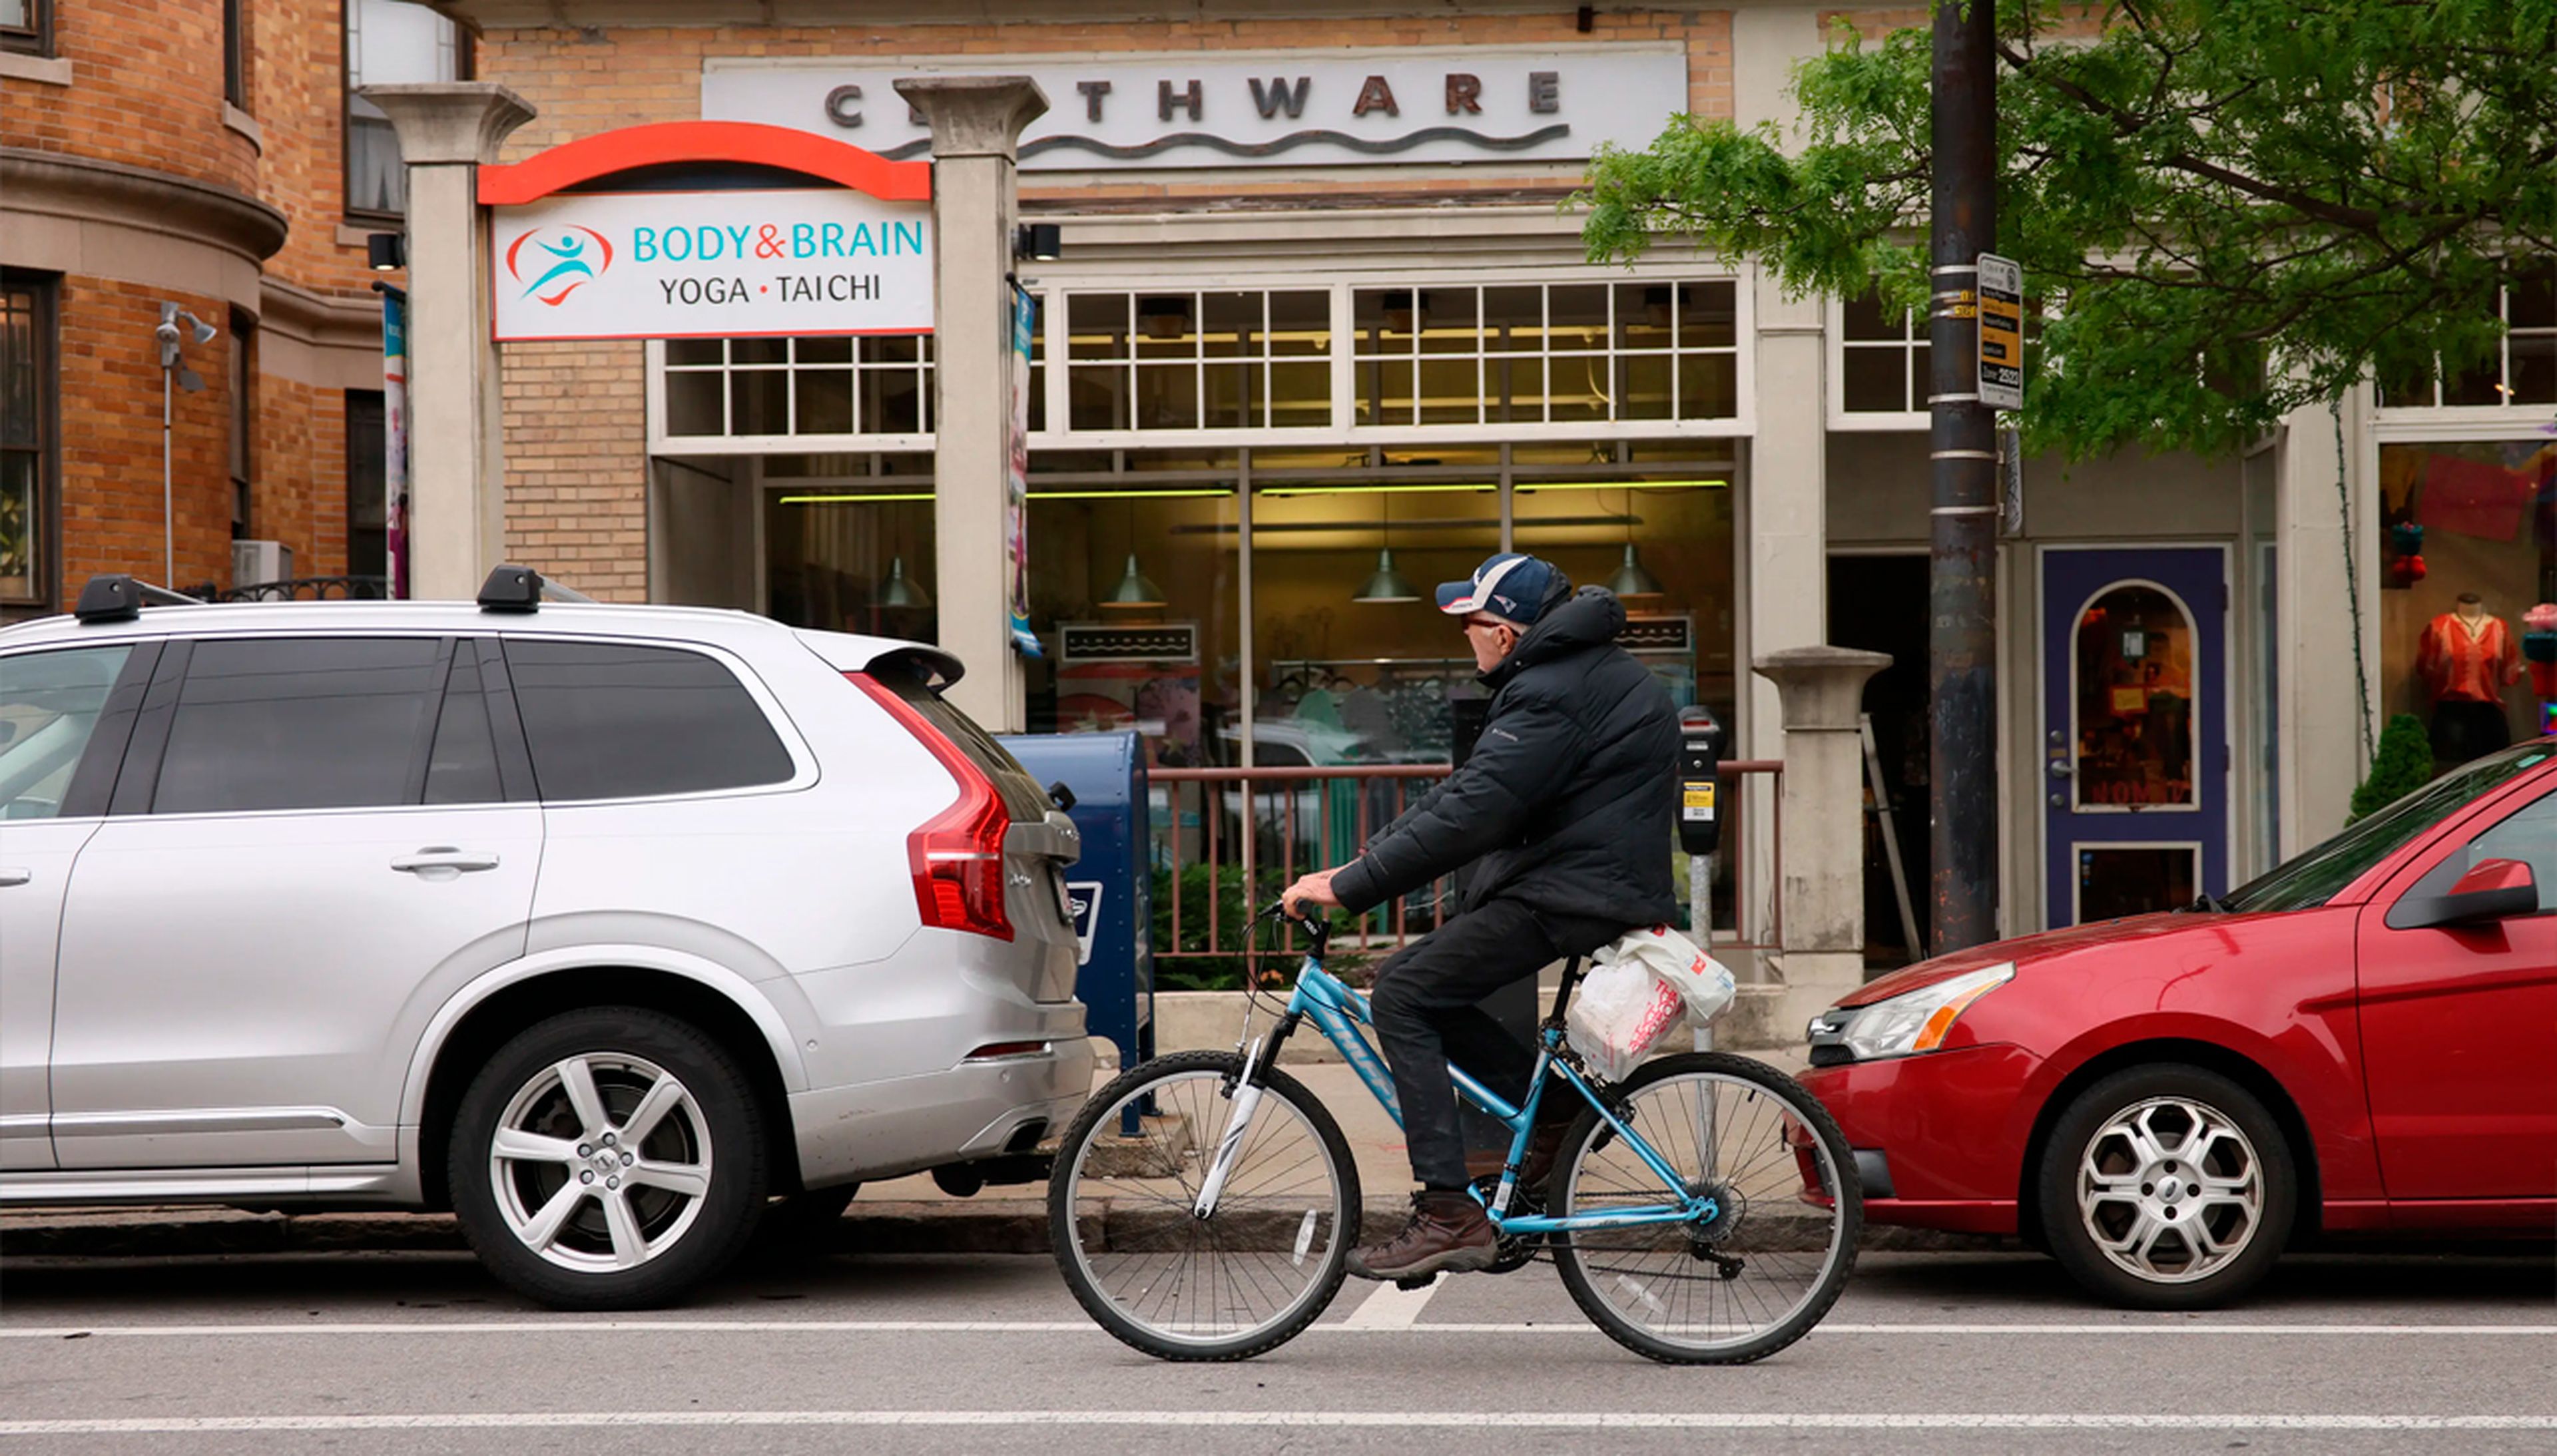 El transporte en bicicleta es positivo para los comercios, ayudando a atraer gente gracias a la accesibilidad.